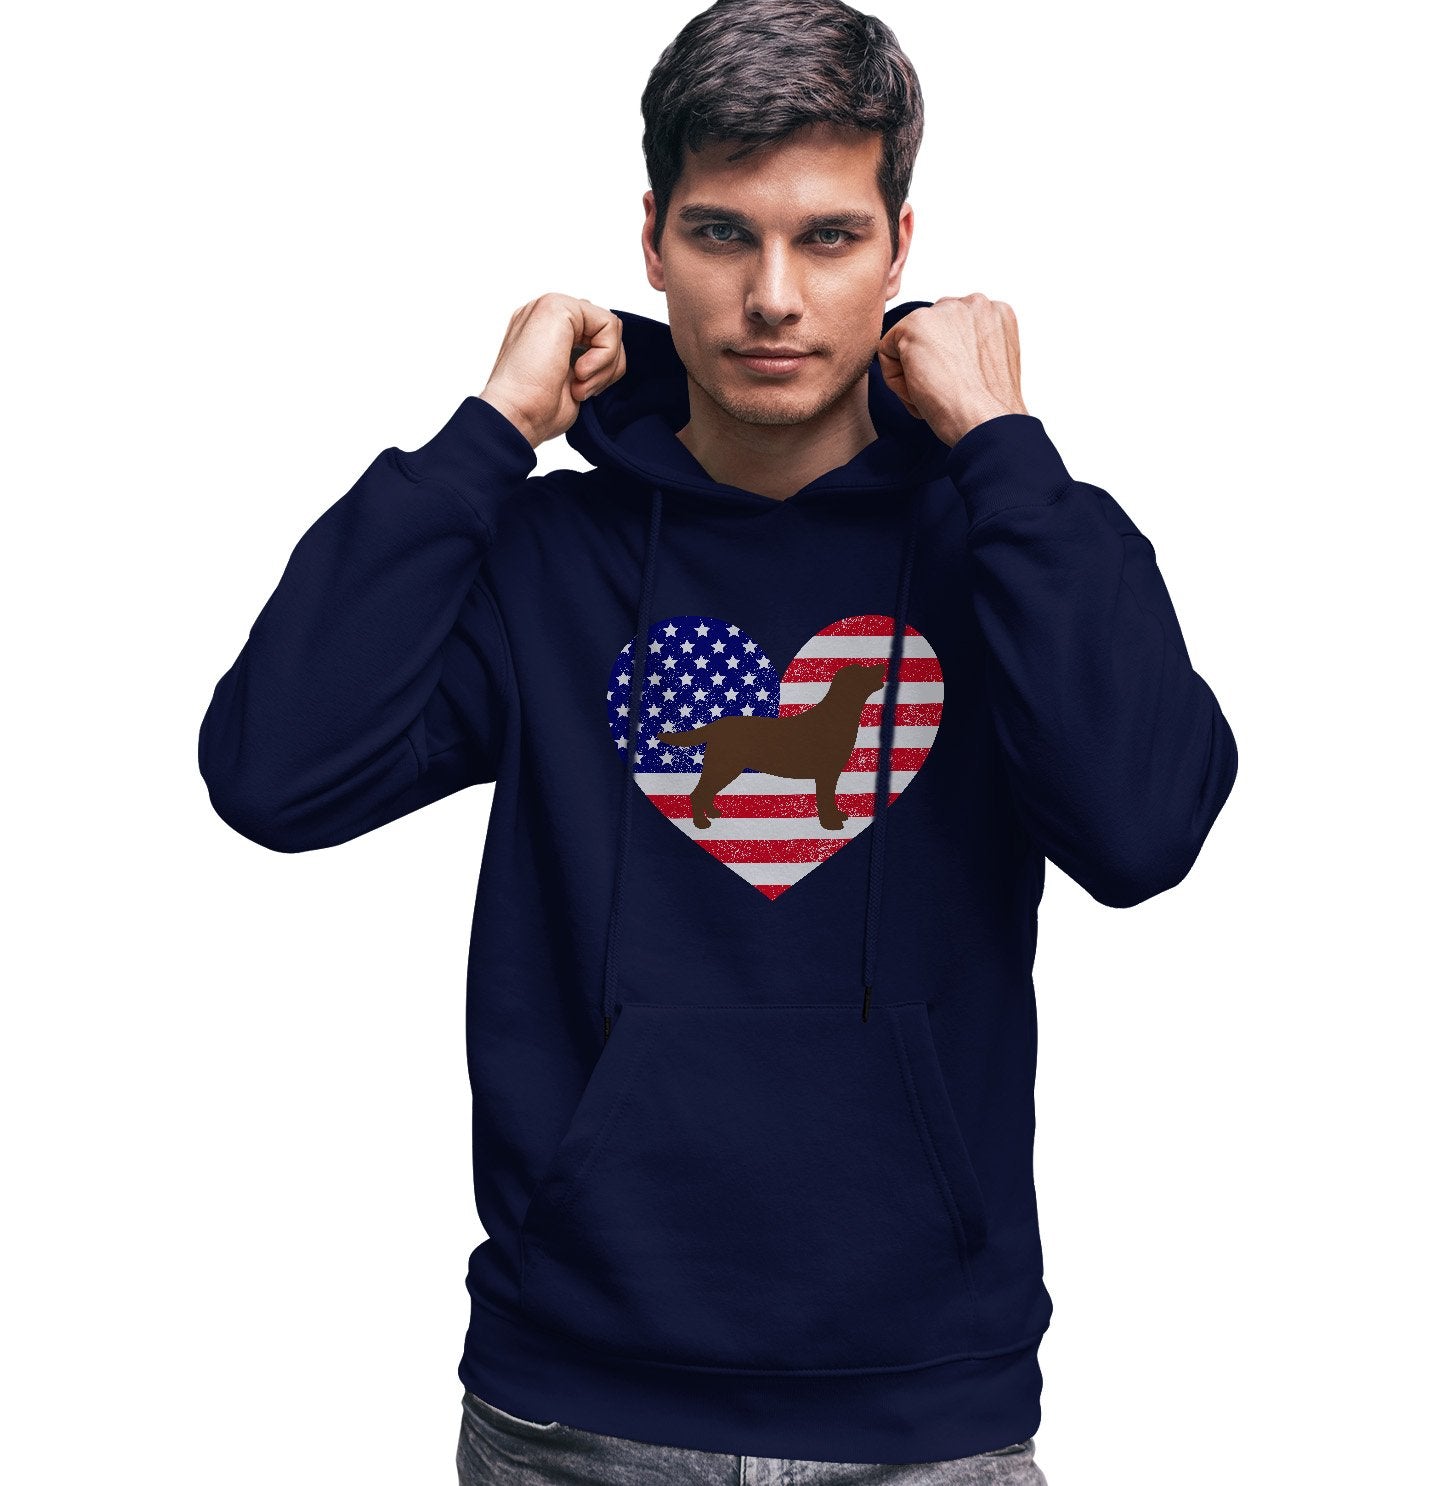 USA Flag Chocolate Lab Silhouette - Adult Unisex Hoodie Sweatshirt